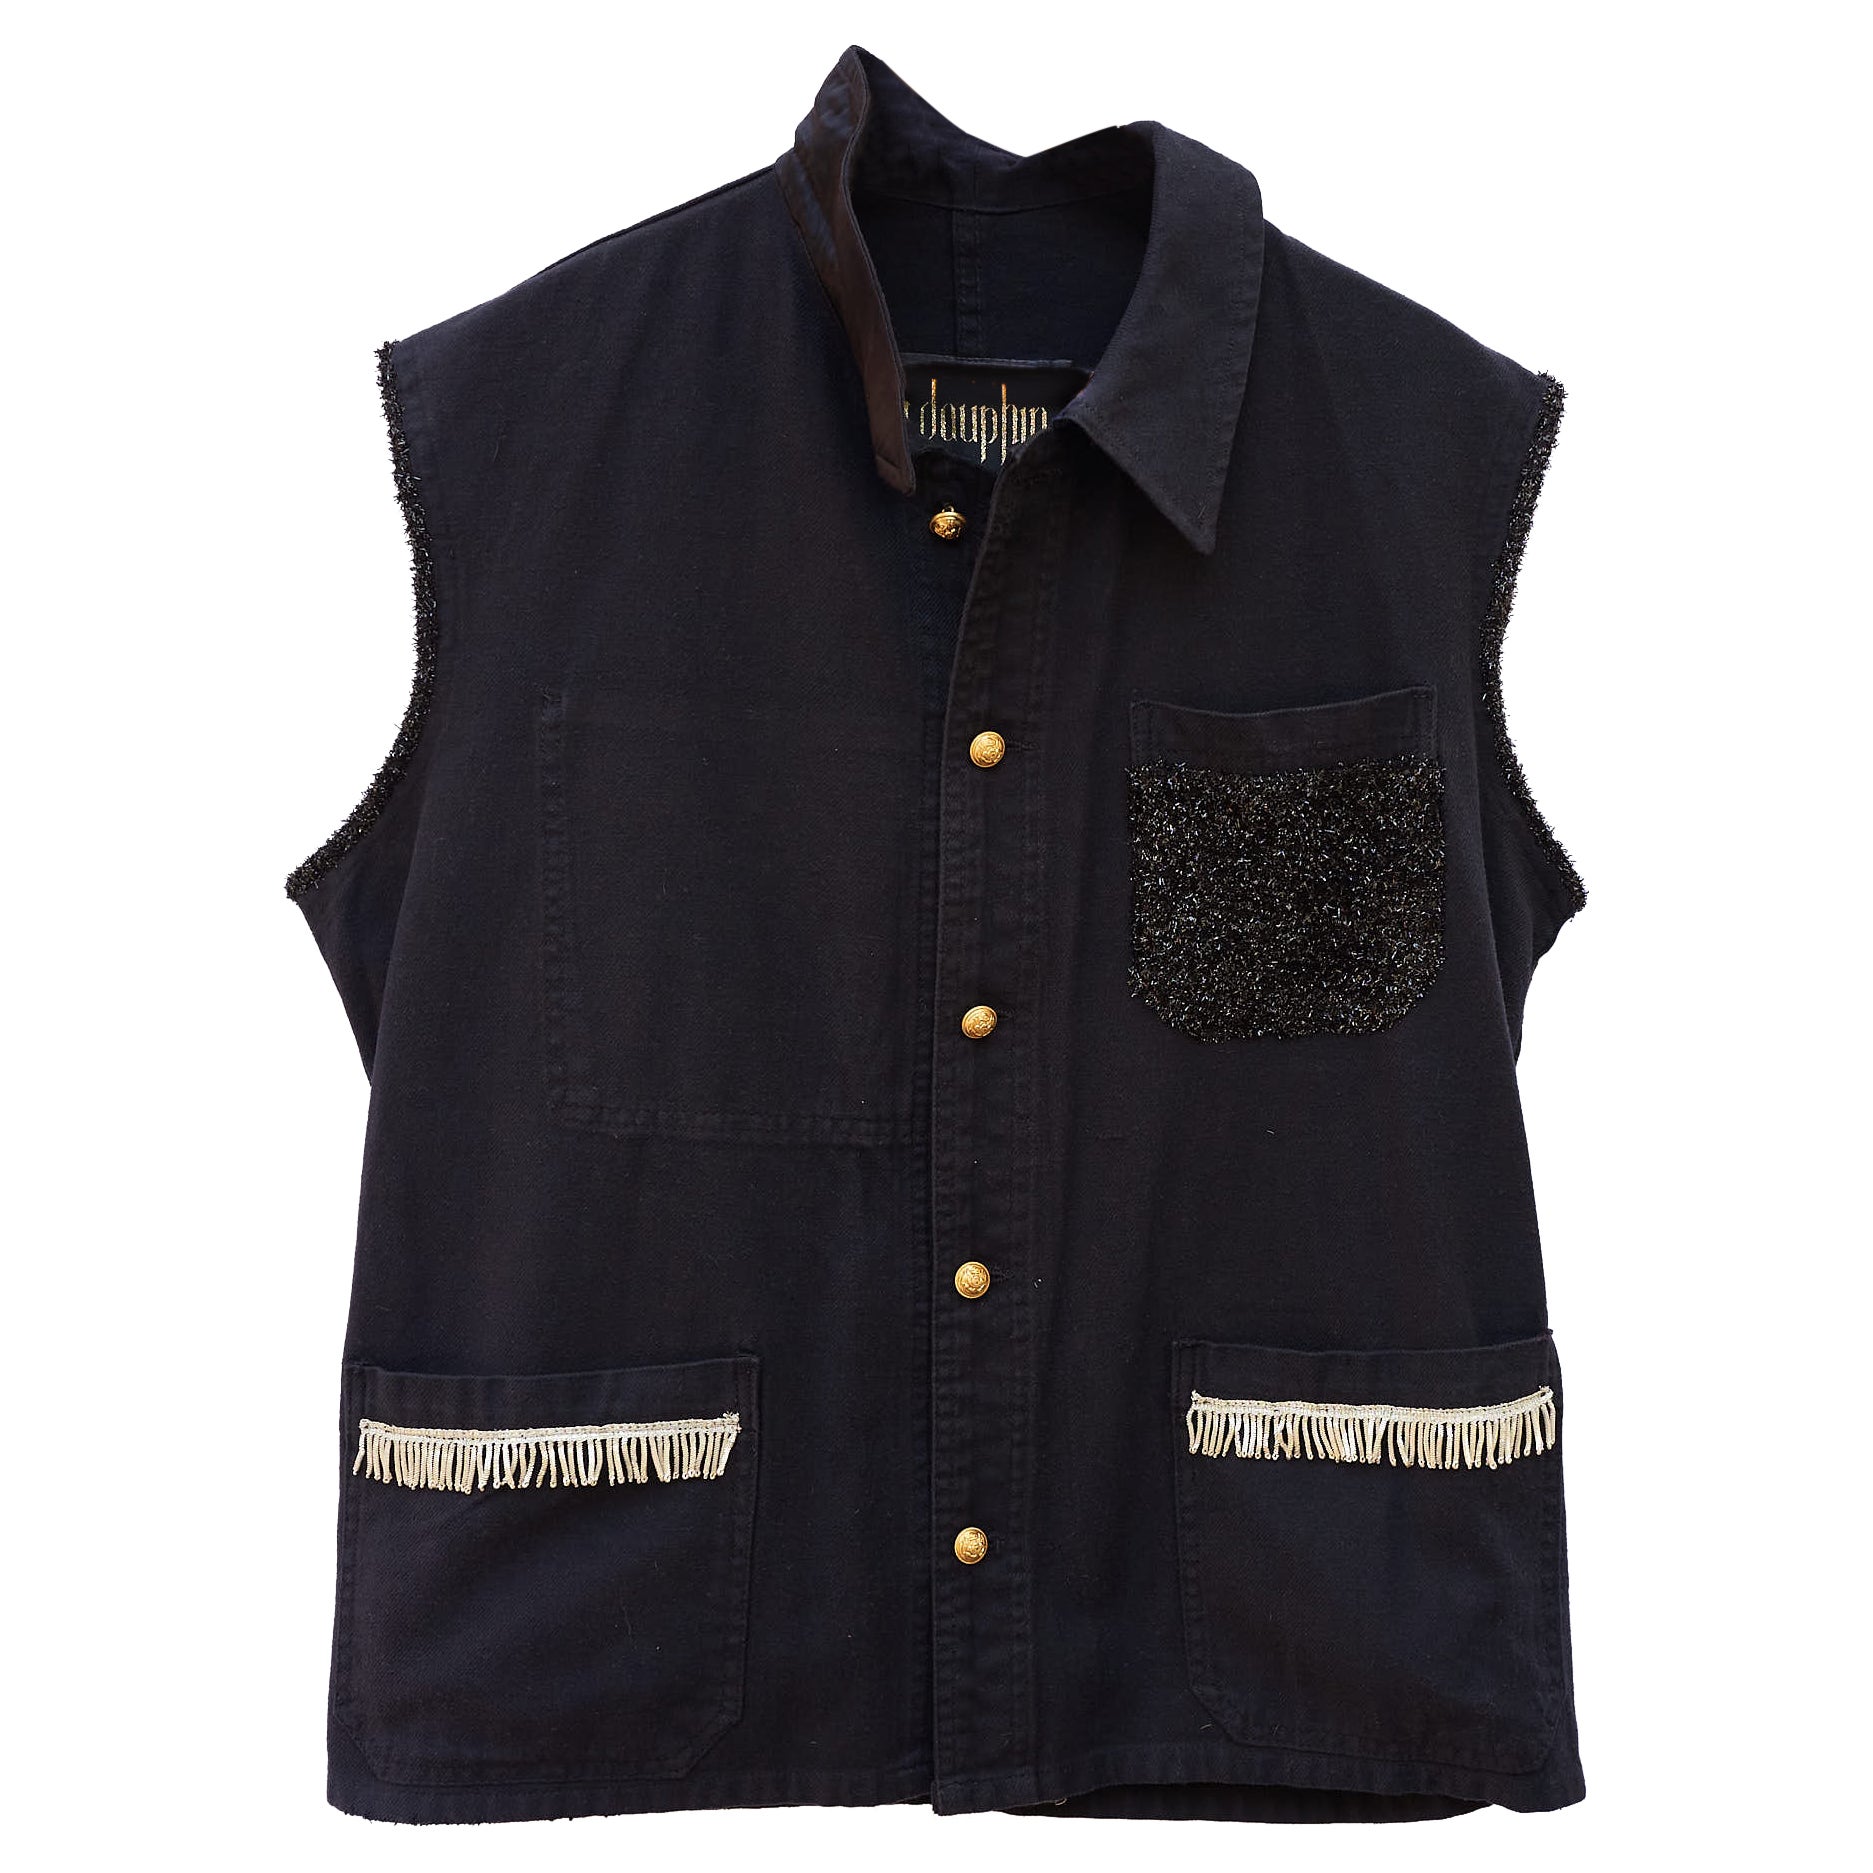 Sleeveless Vest Jacket Black French Work Wear Fringe Embellished J Dauphin